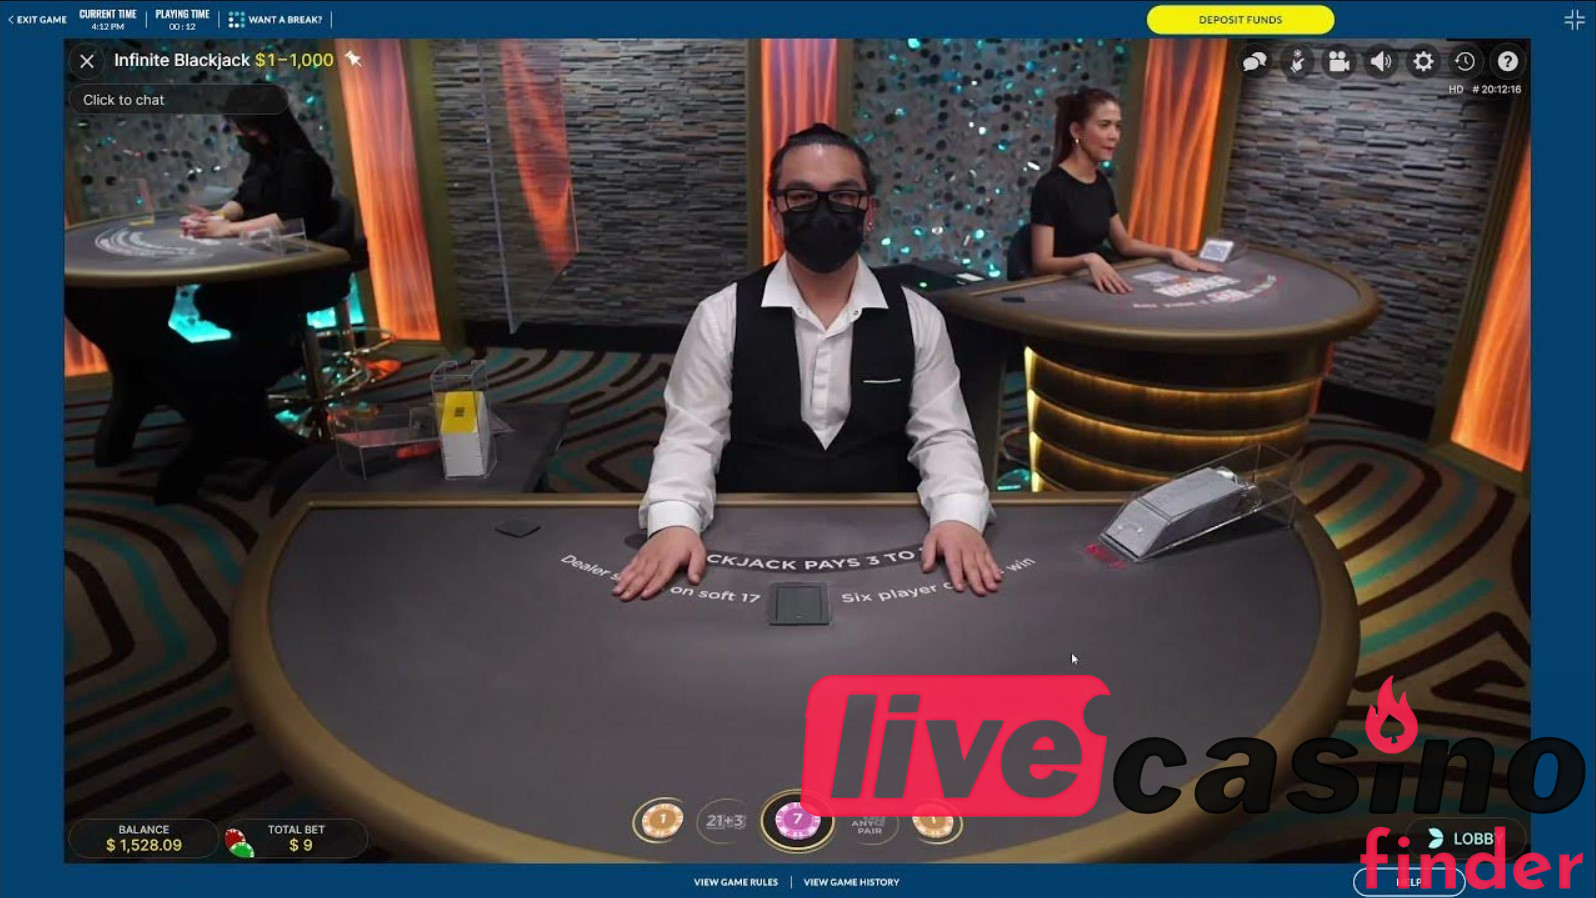 Casino OLG Live Blackjack.